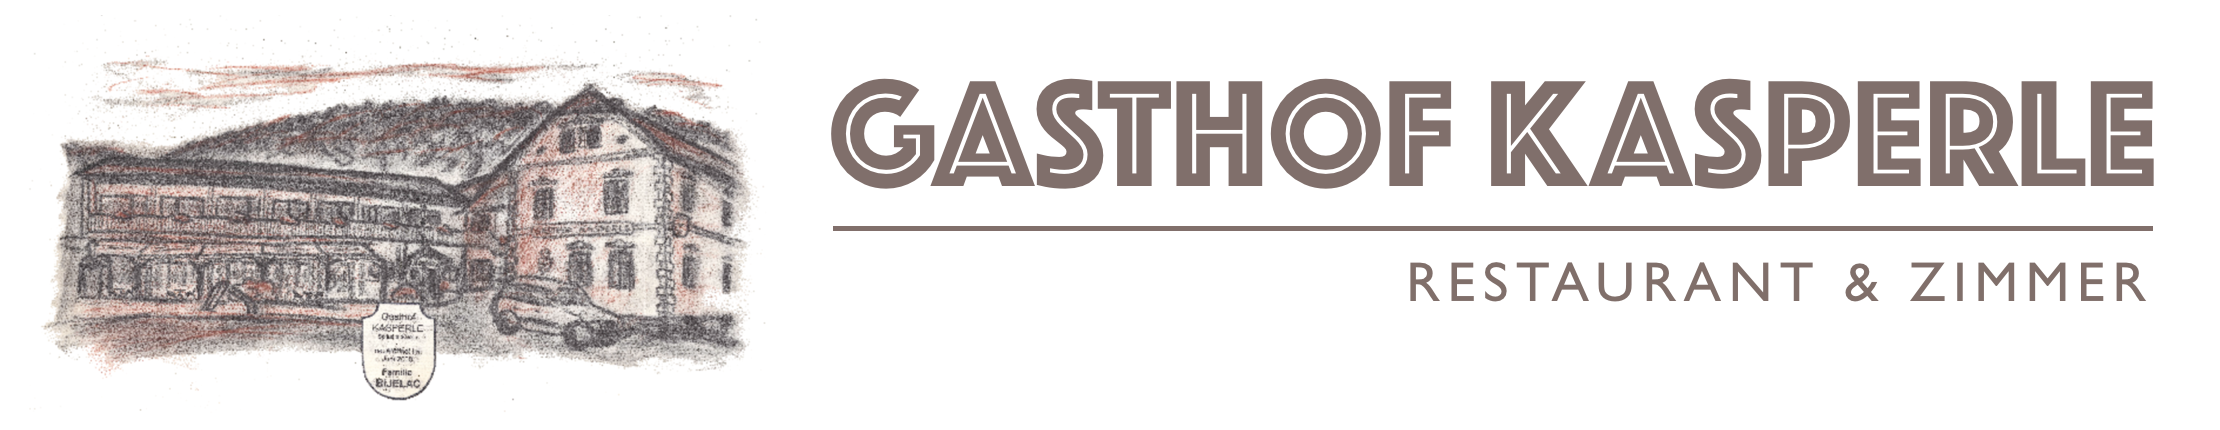 Gasthof Kasperle